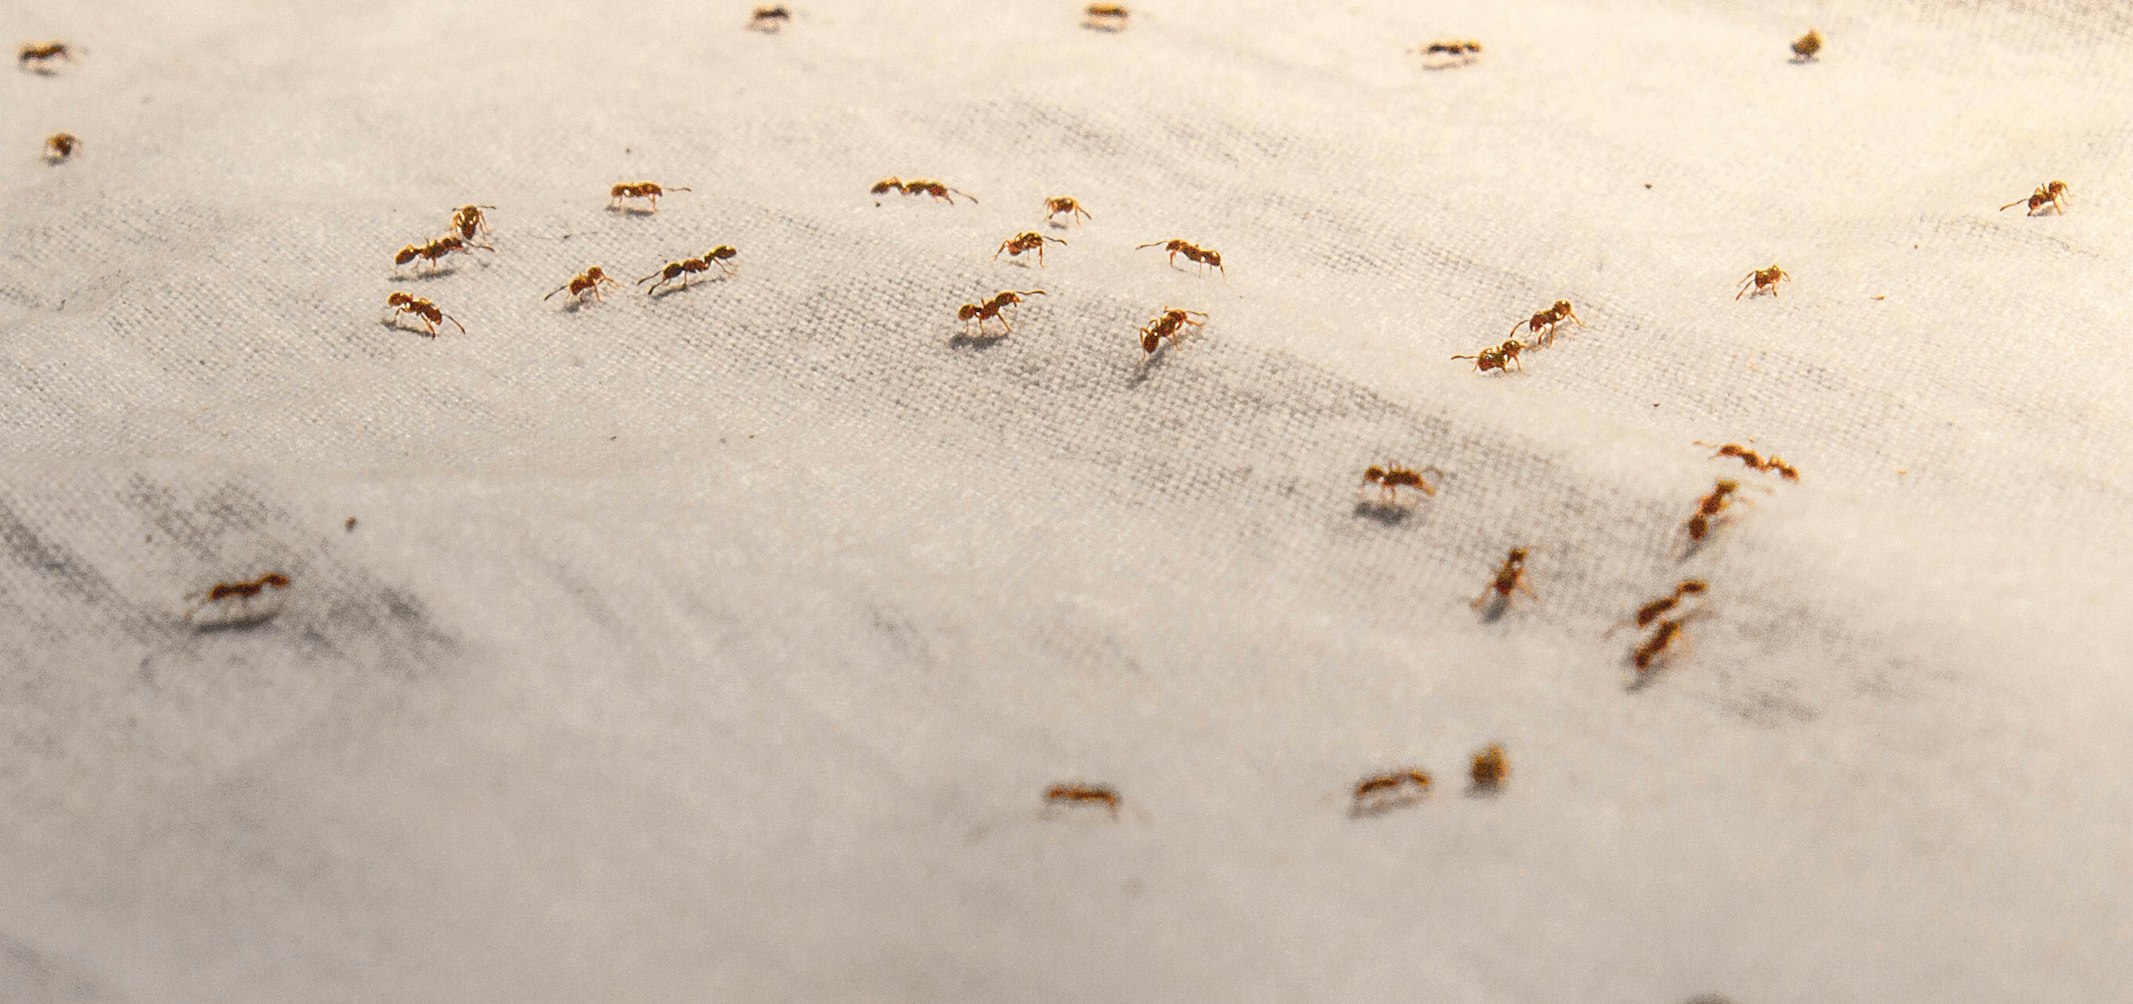 Как избавиться от муравьев на кухне – народные методы